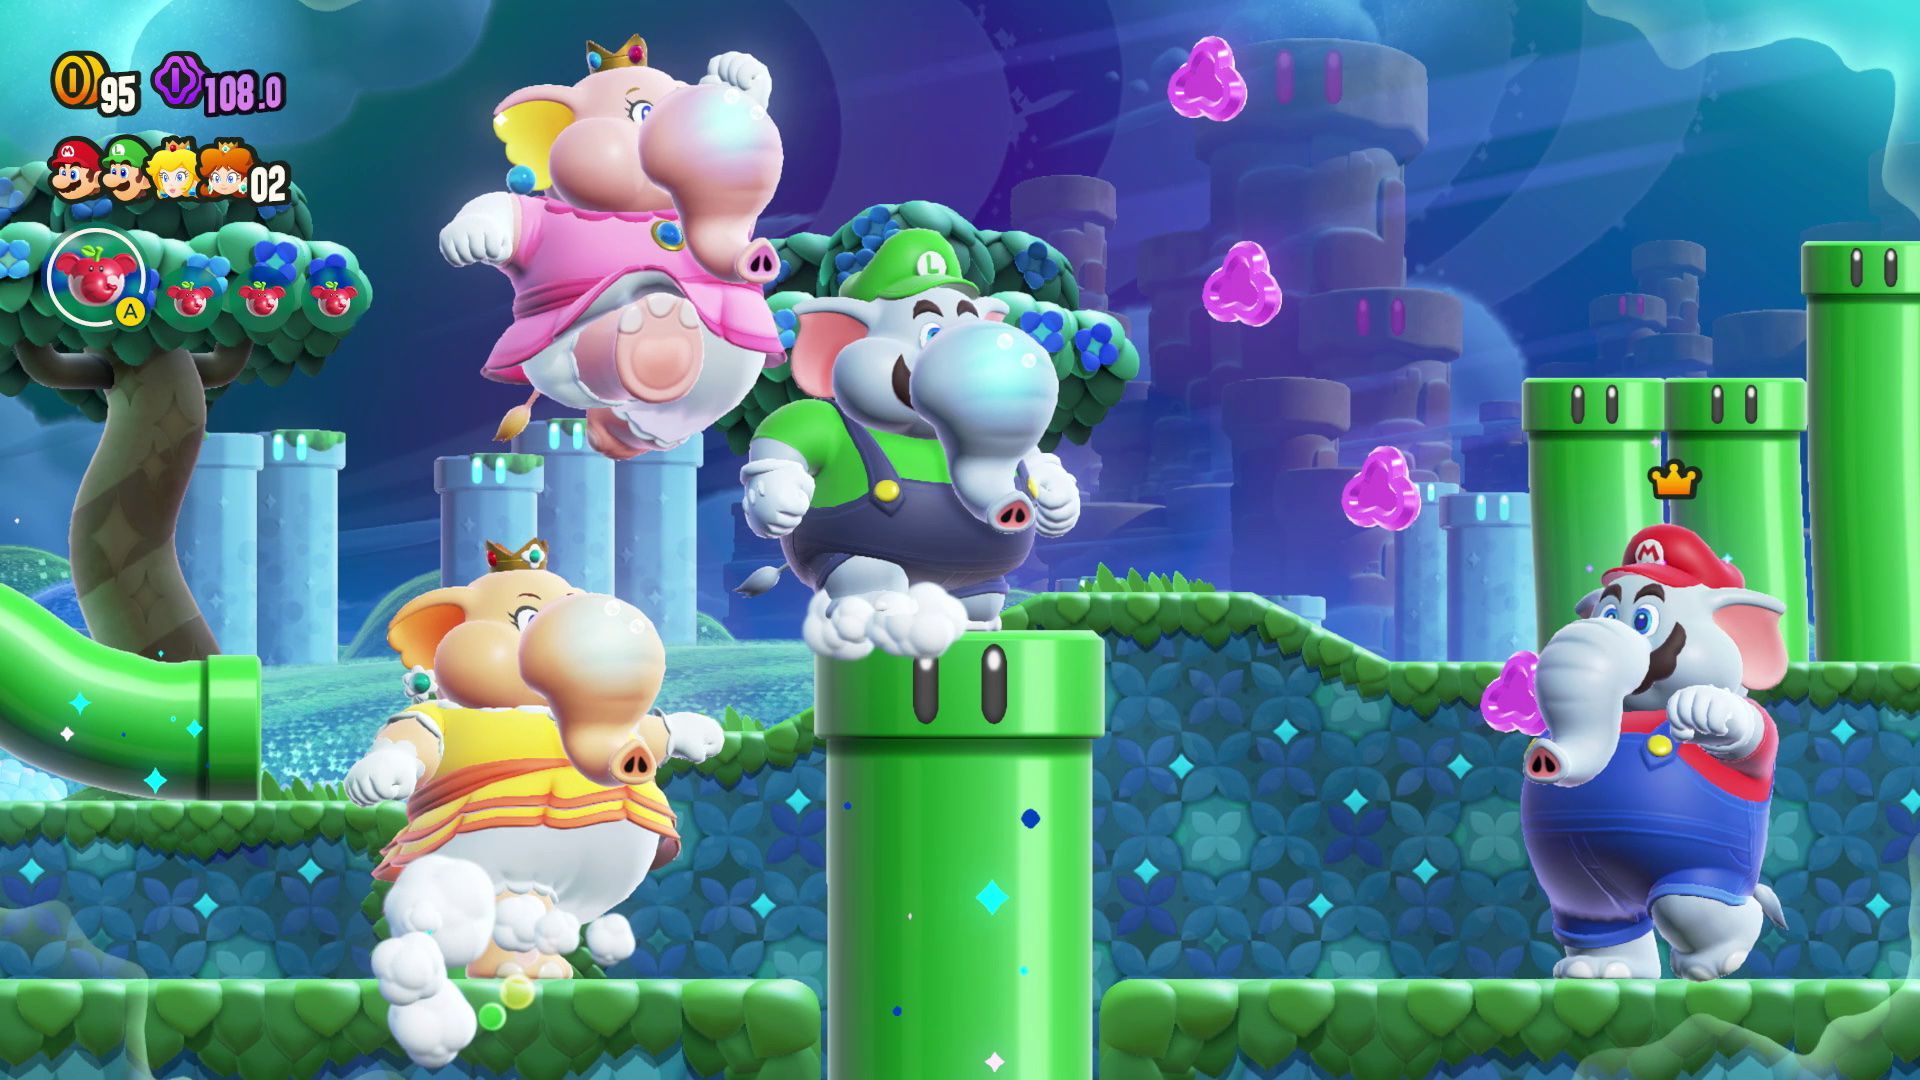 Daisy, Peach, Luigi et Mario, sous forme d'éléphant, traversent un niveau rempli de tuyaux dans Super Mario Bros. Wonder